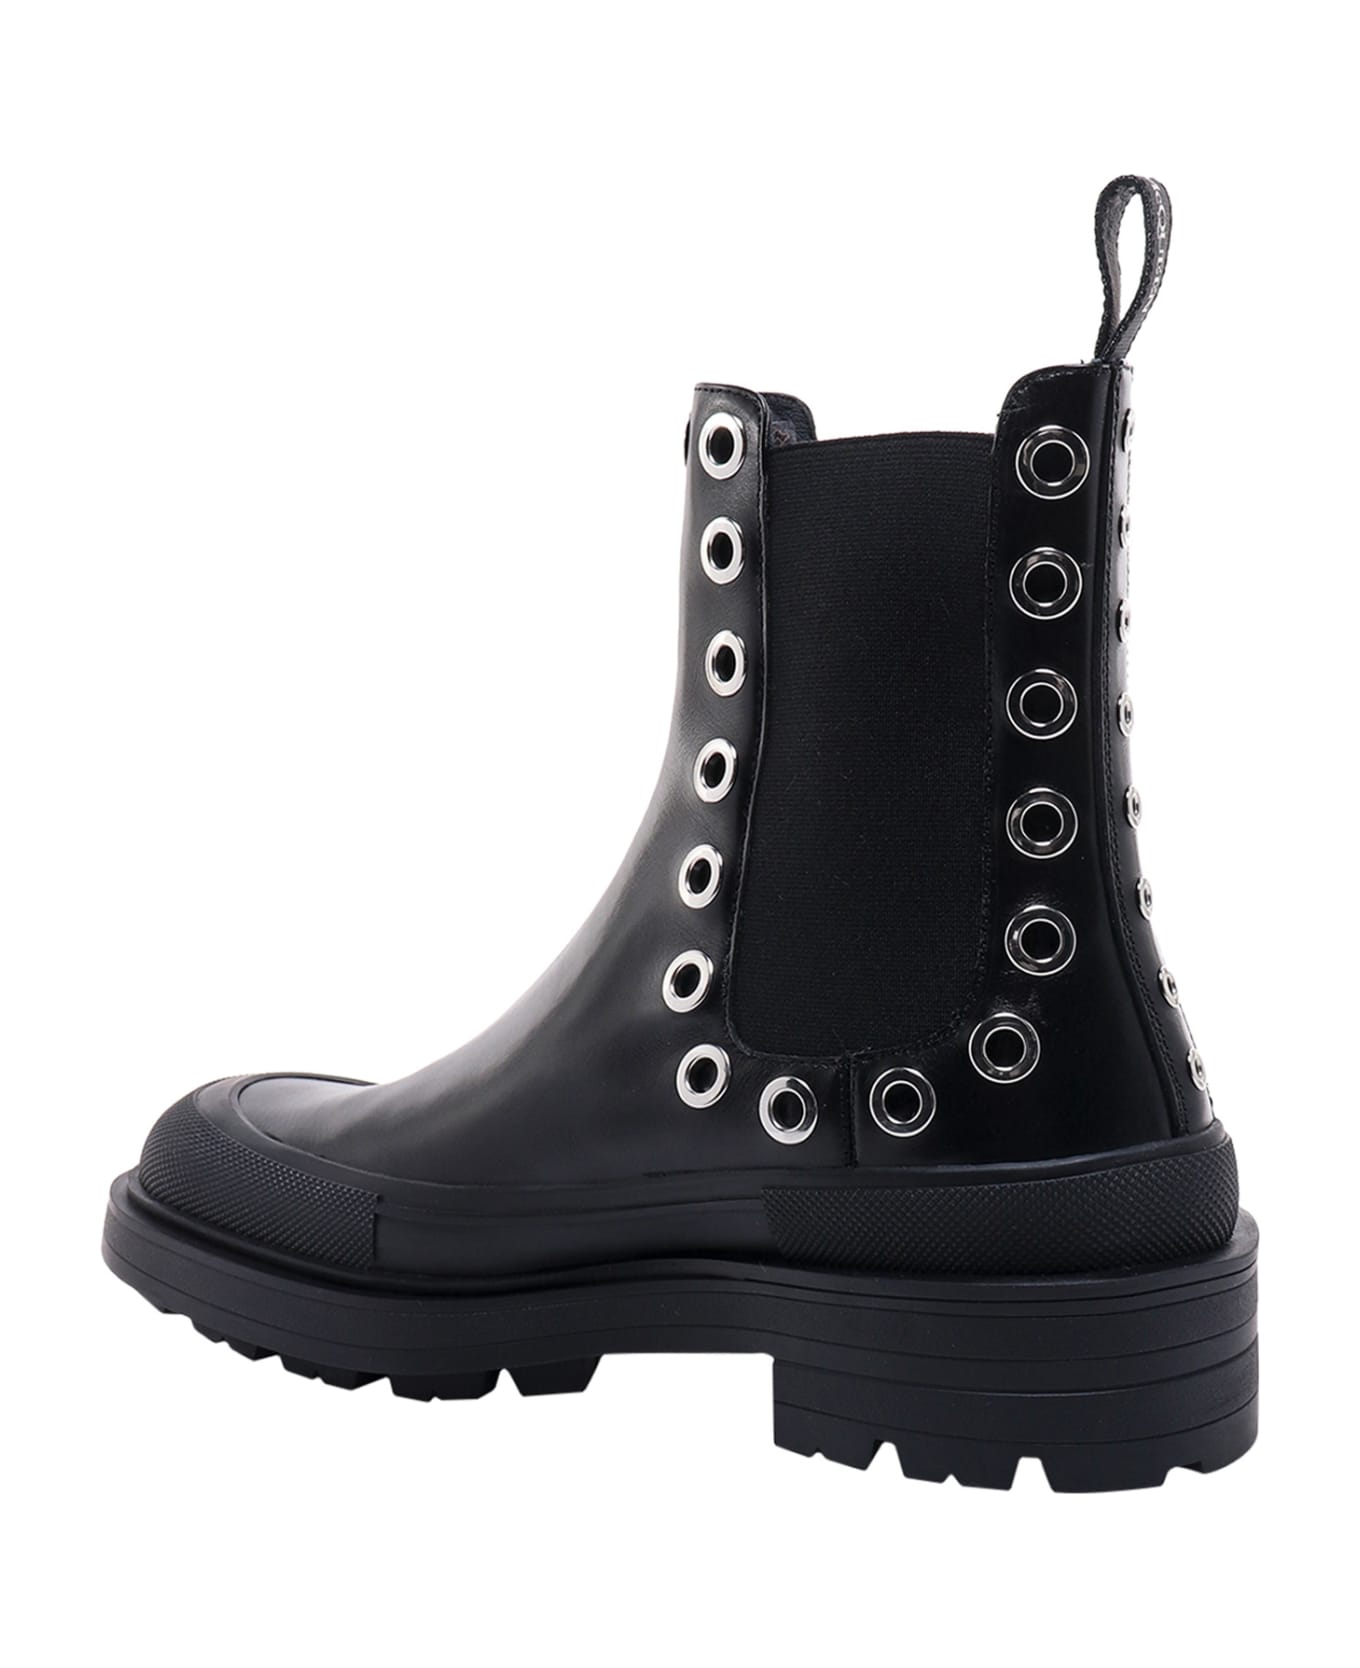 Alexander McQueen Stack Boots - Black ブーツ